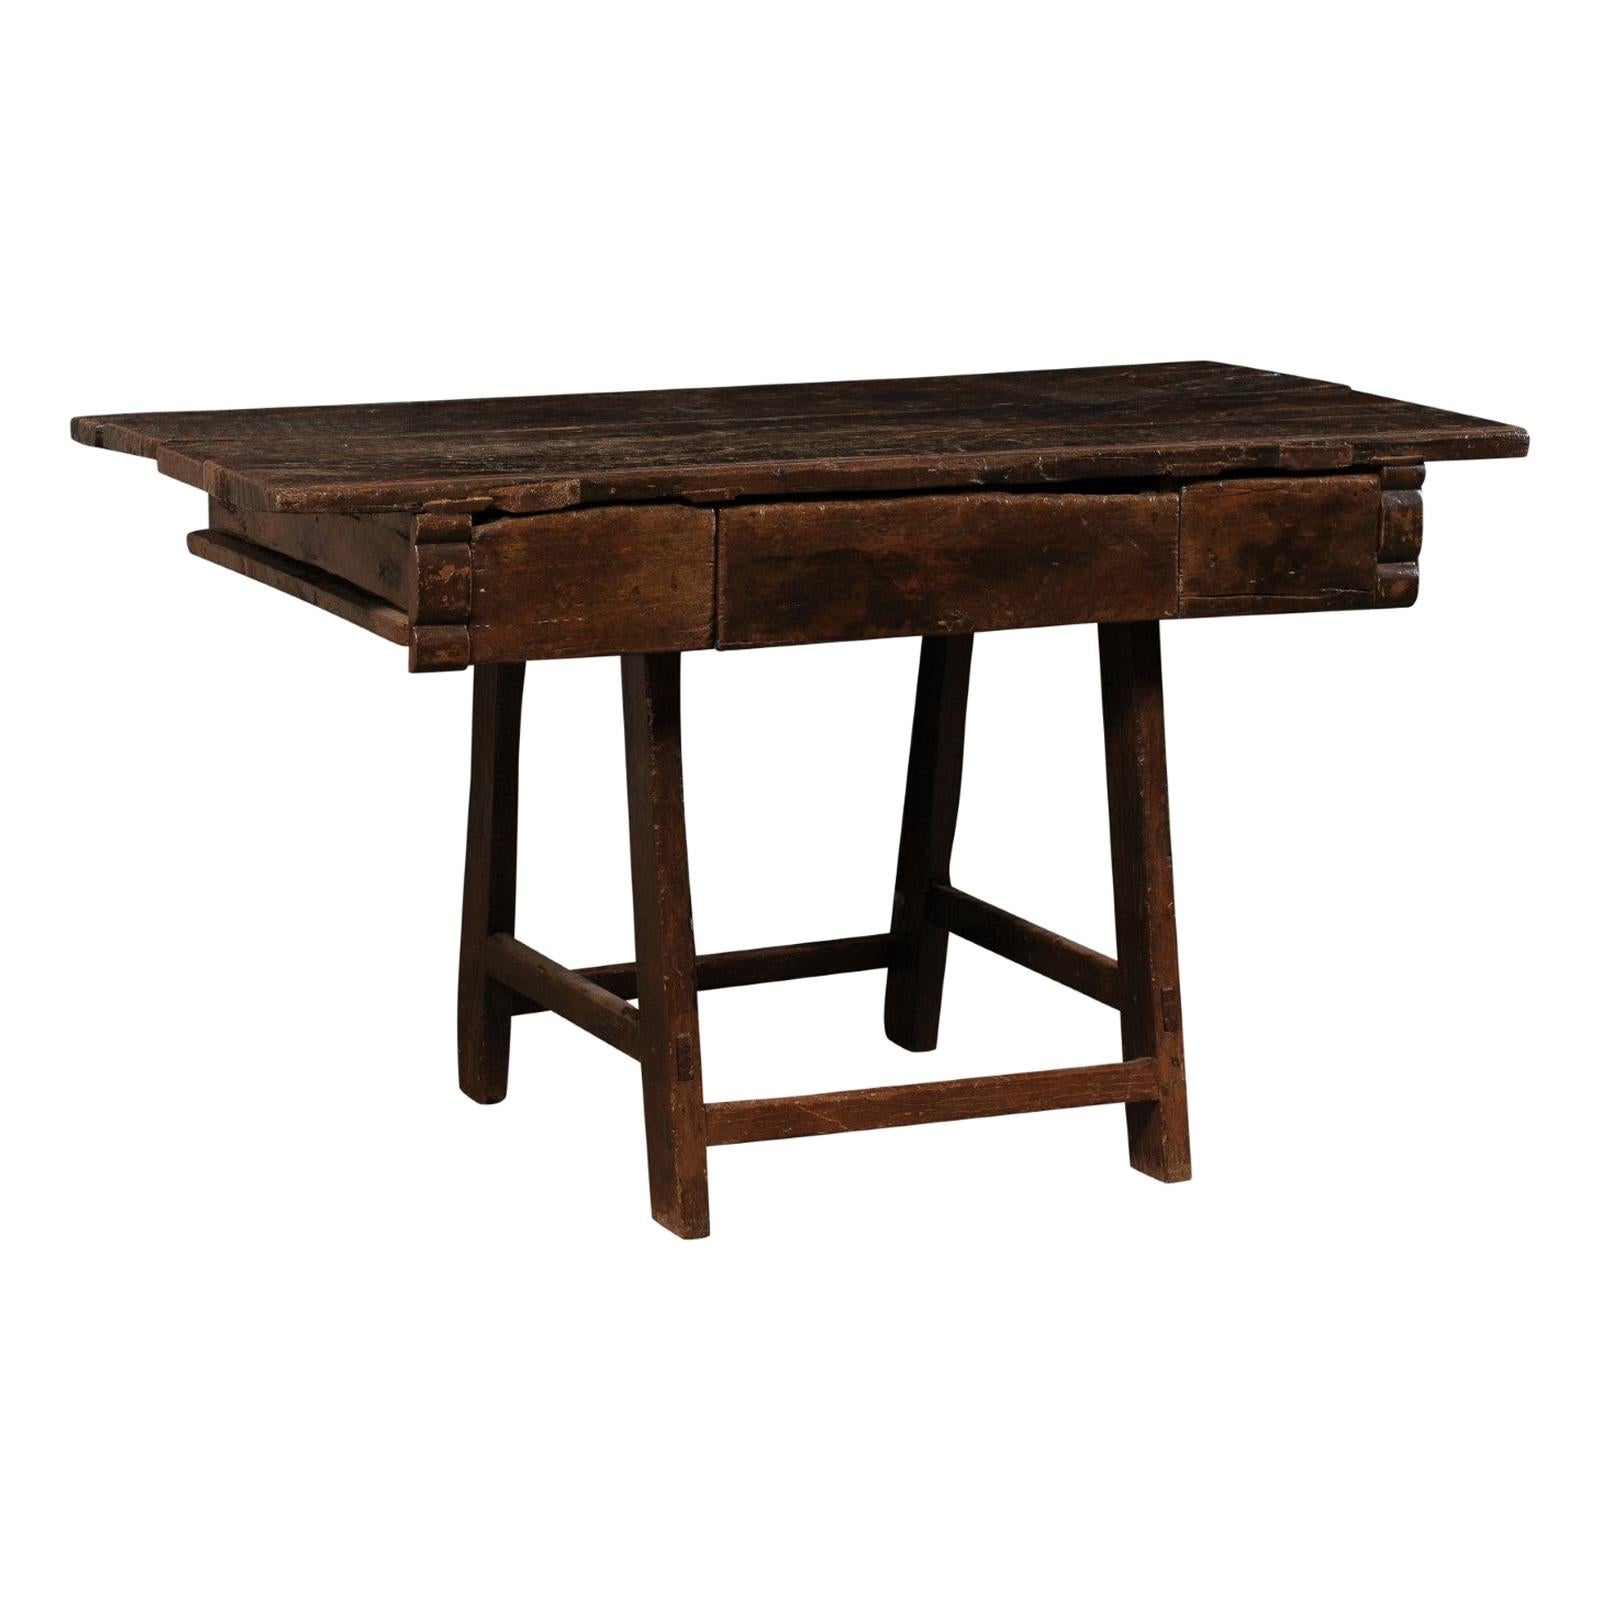 Brasilianischer Peroba-Holztisch aus dem 18. Jahrhundert mit Schubladen, exquisit rustikal